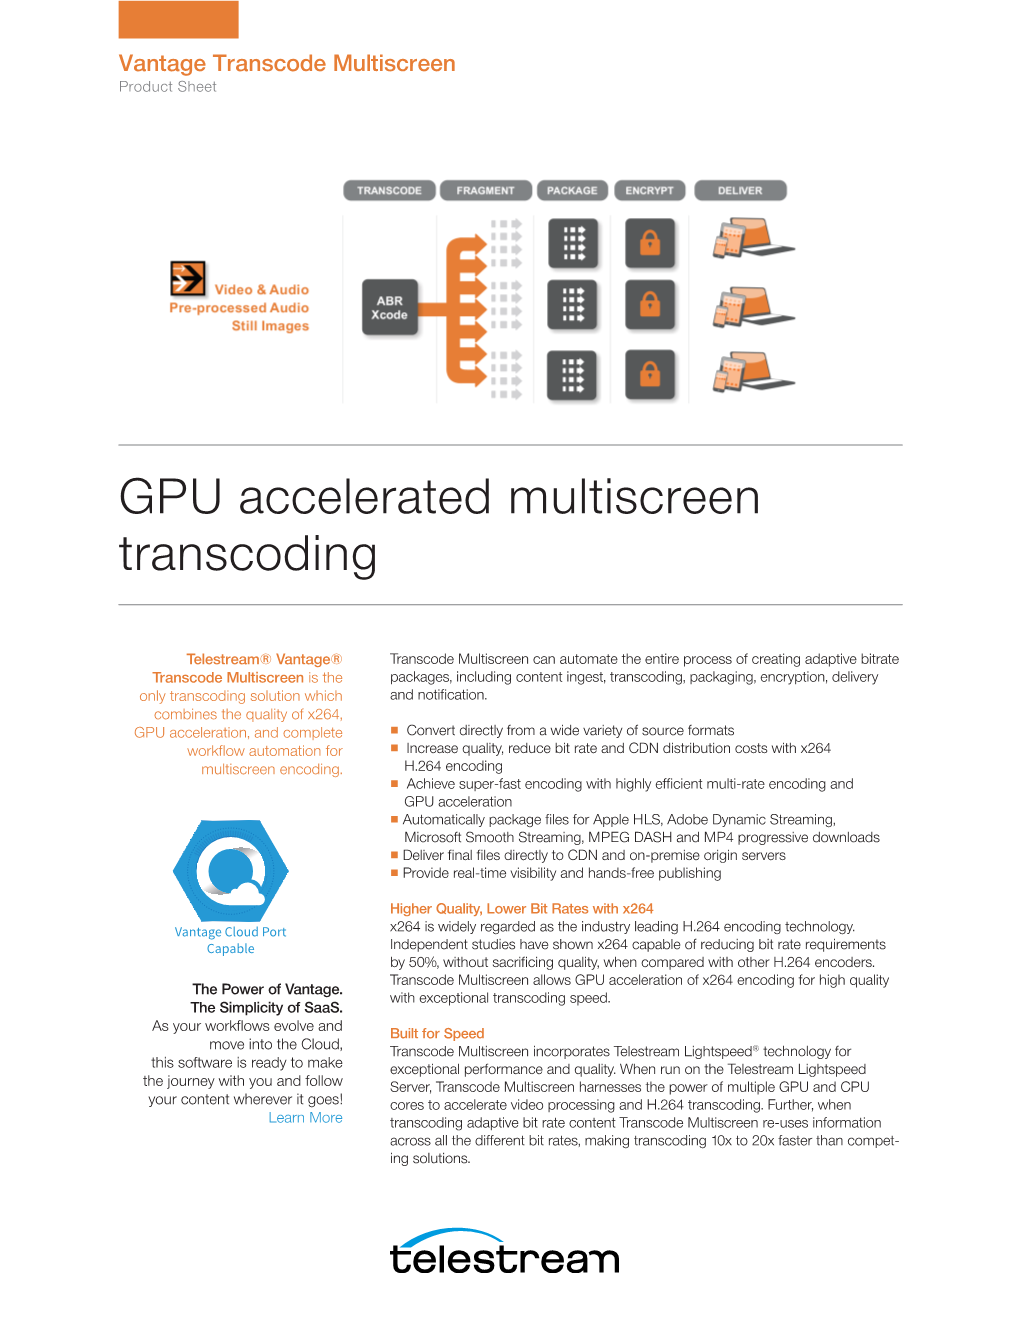 GPU Accelerated Multiscreen Transcoding